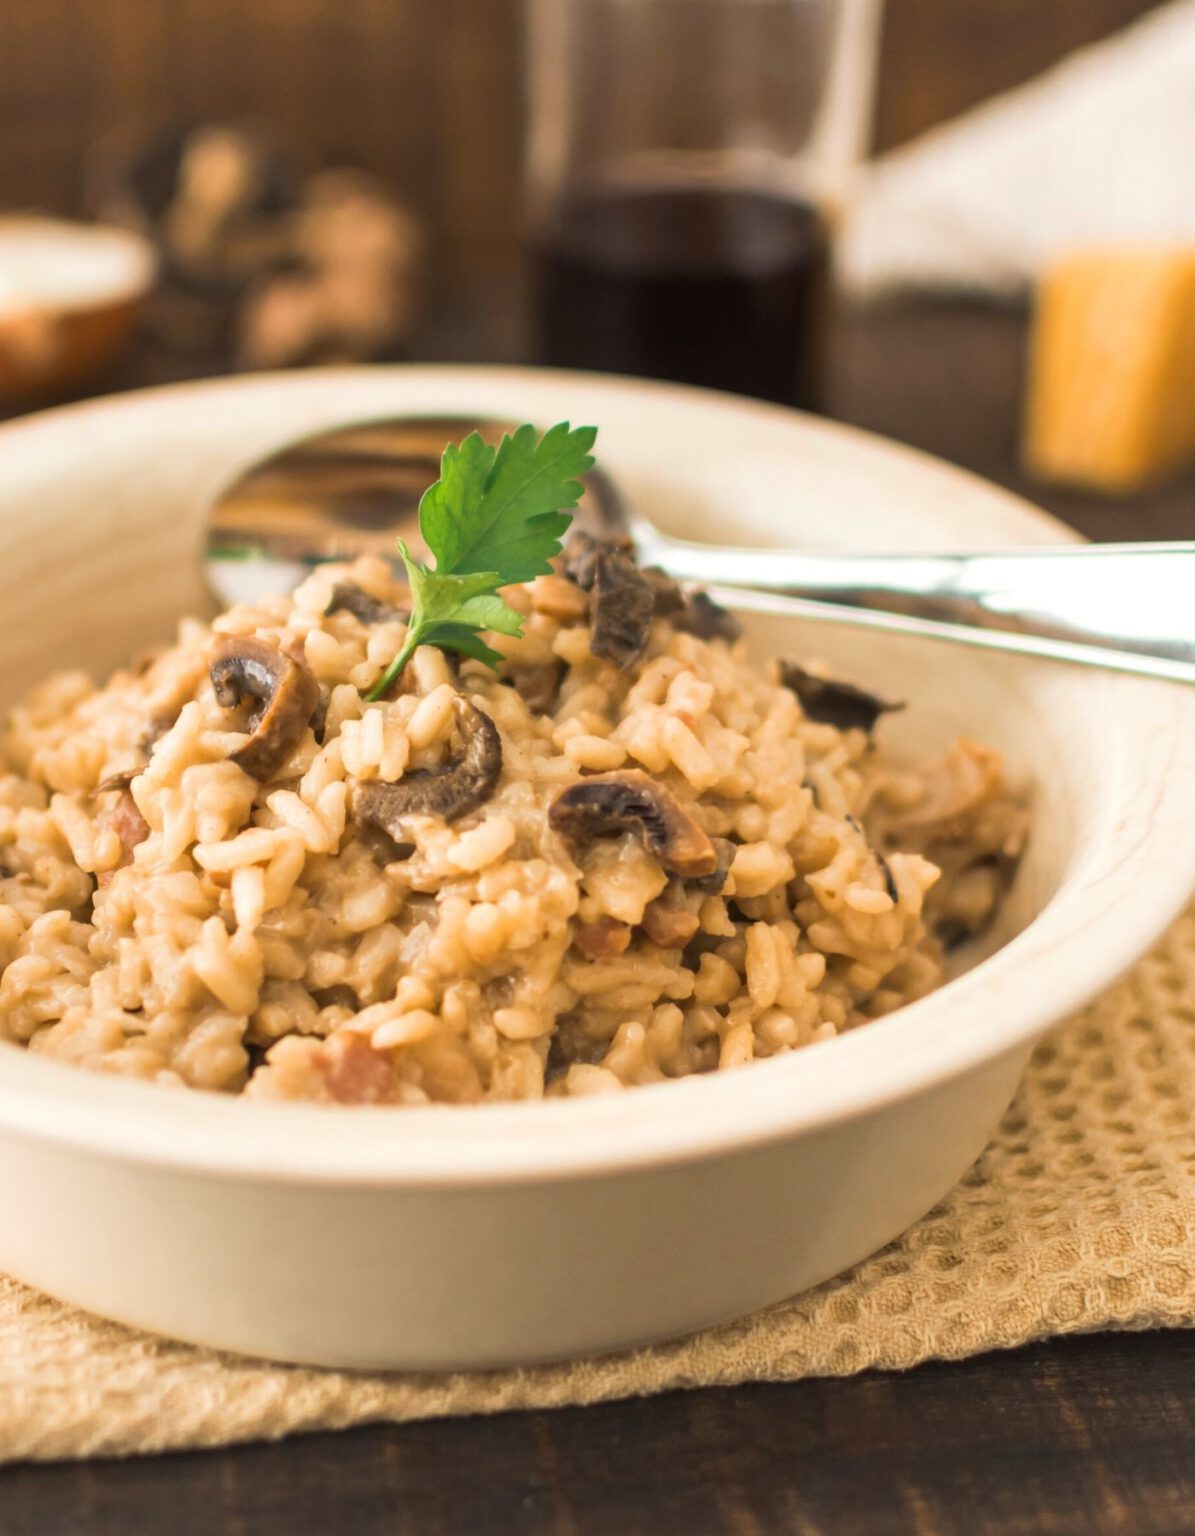 Reispfanne mit Champignons und Reis | Reispfanne mit Pilzen